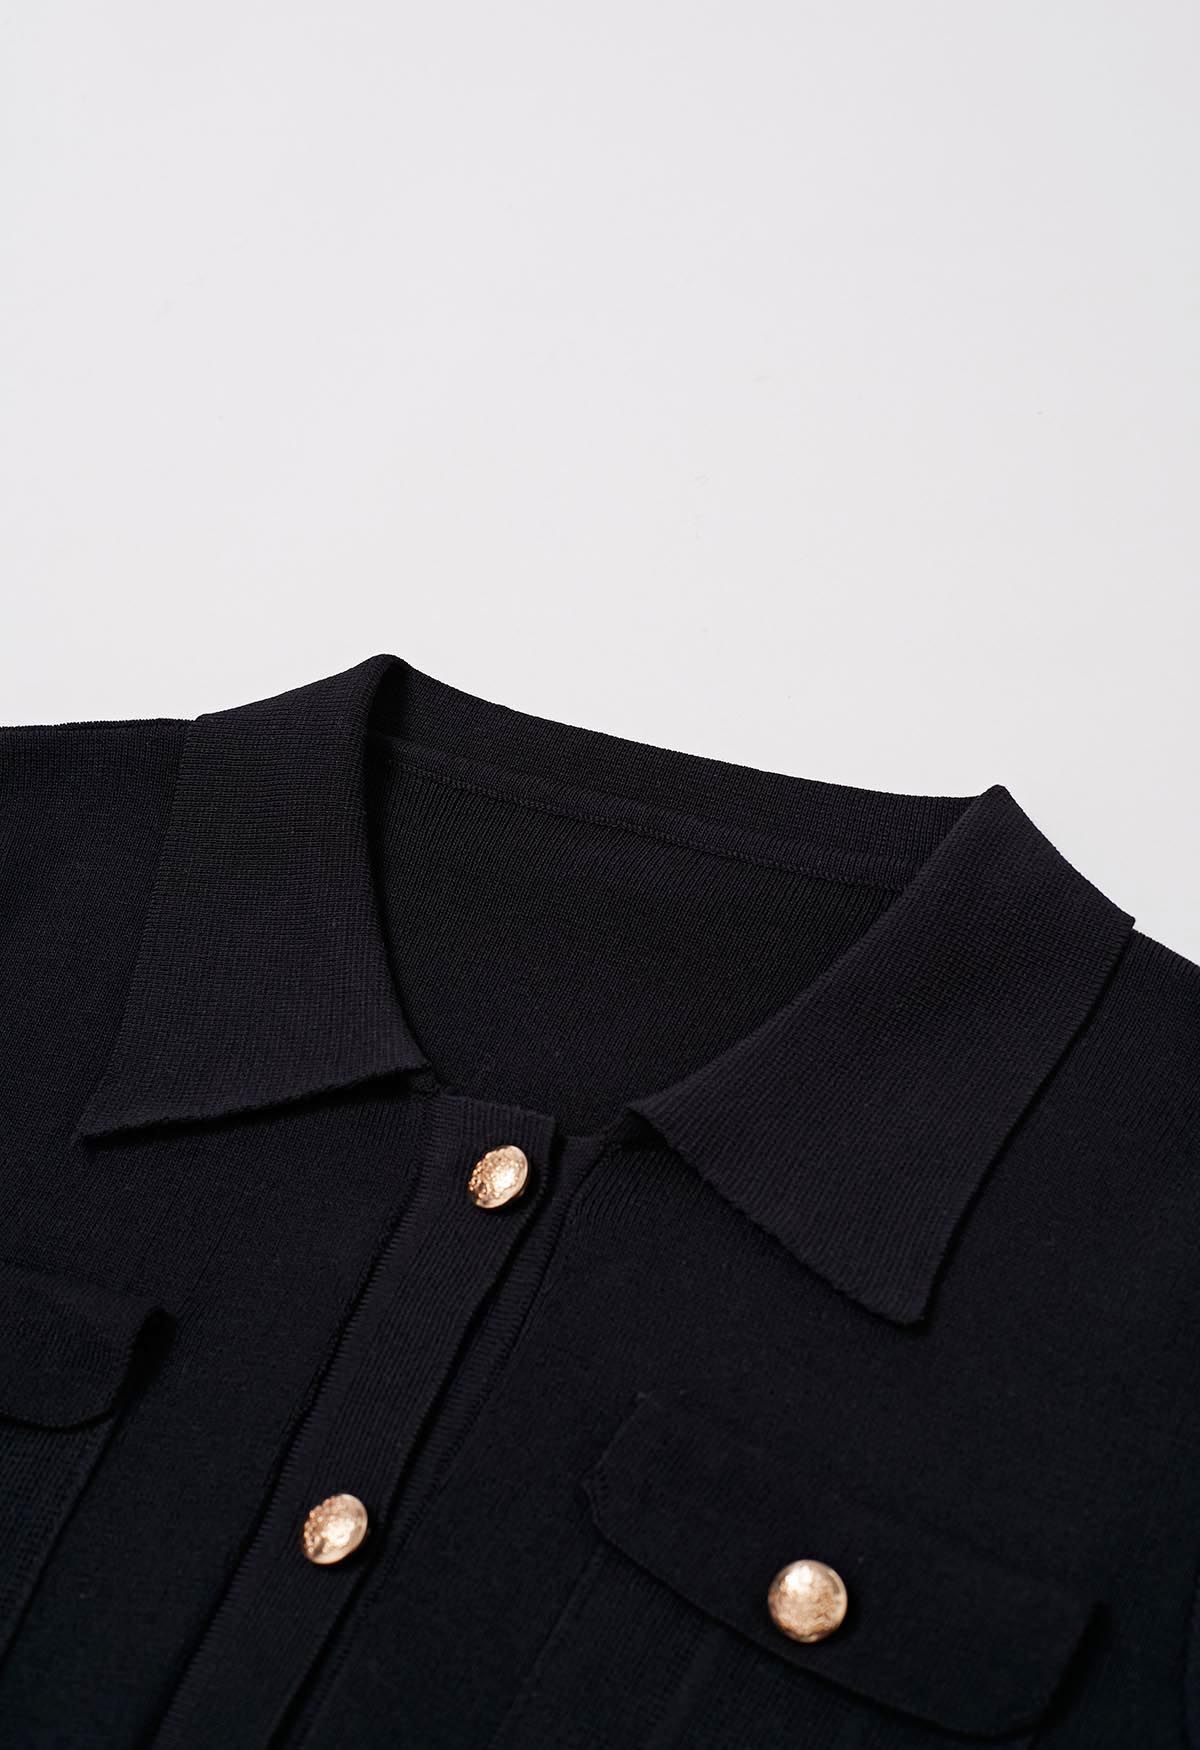 Conjunto de falda midi y top de punto de manga corta con botones destacados en negro